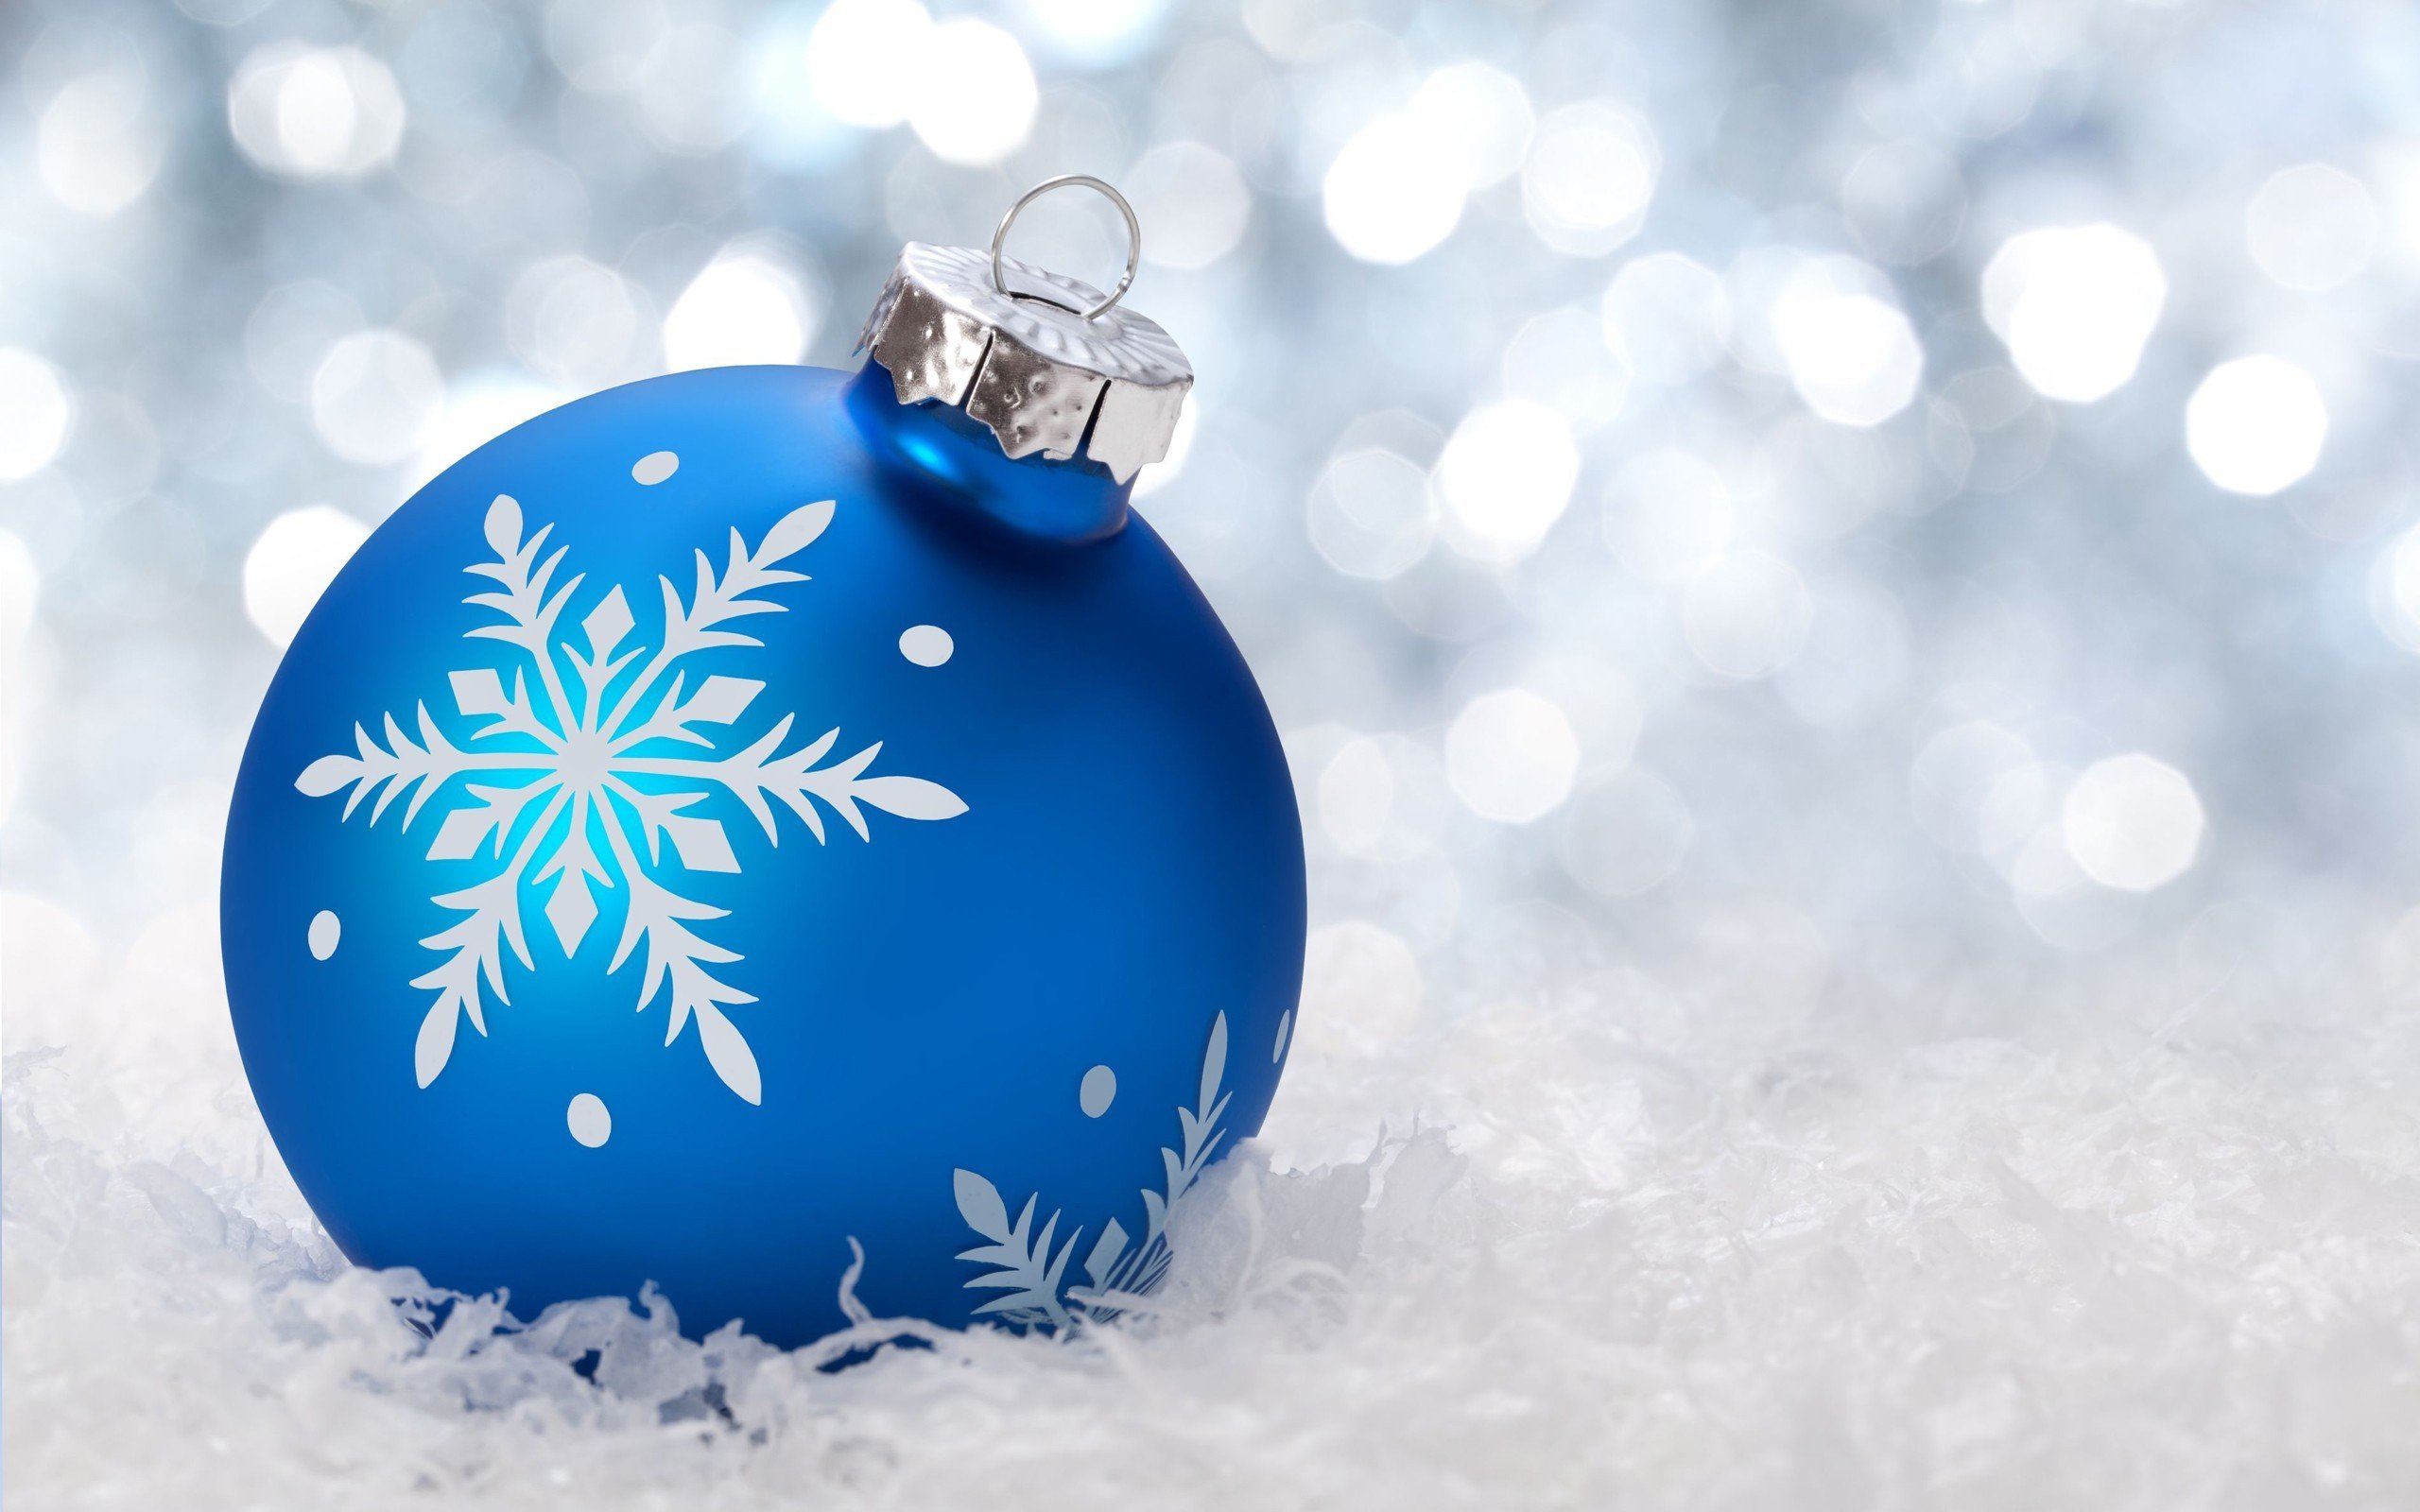 クリスマスの飾りの壁紙,クリスマスオーナメント,青い,クリスマスの飾り,クリスマス,オーナメント